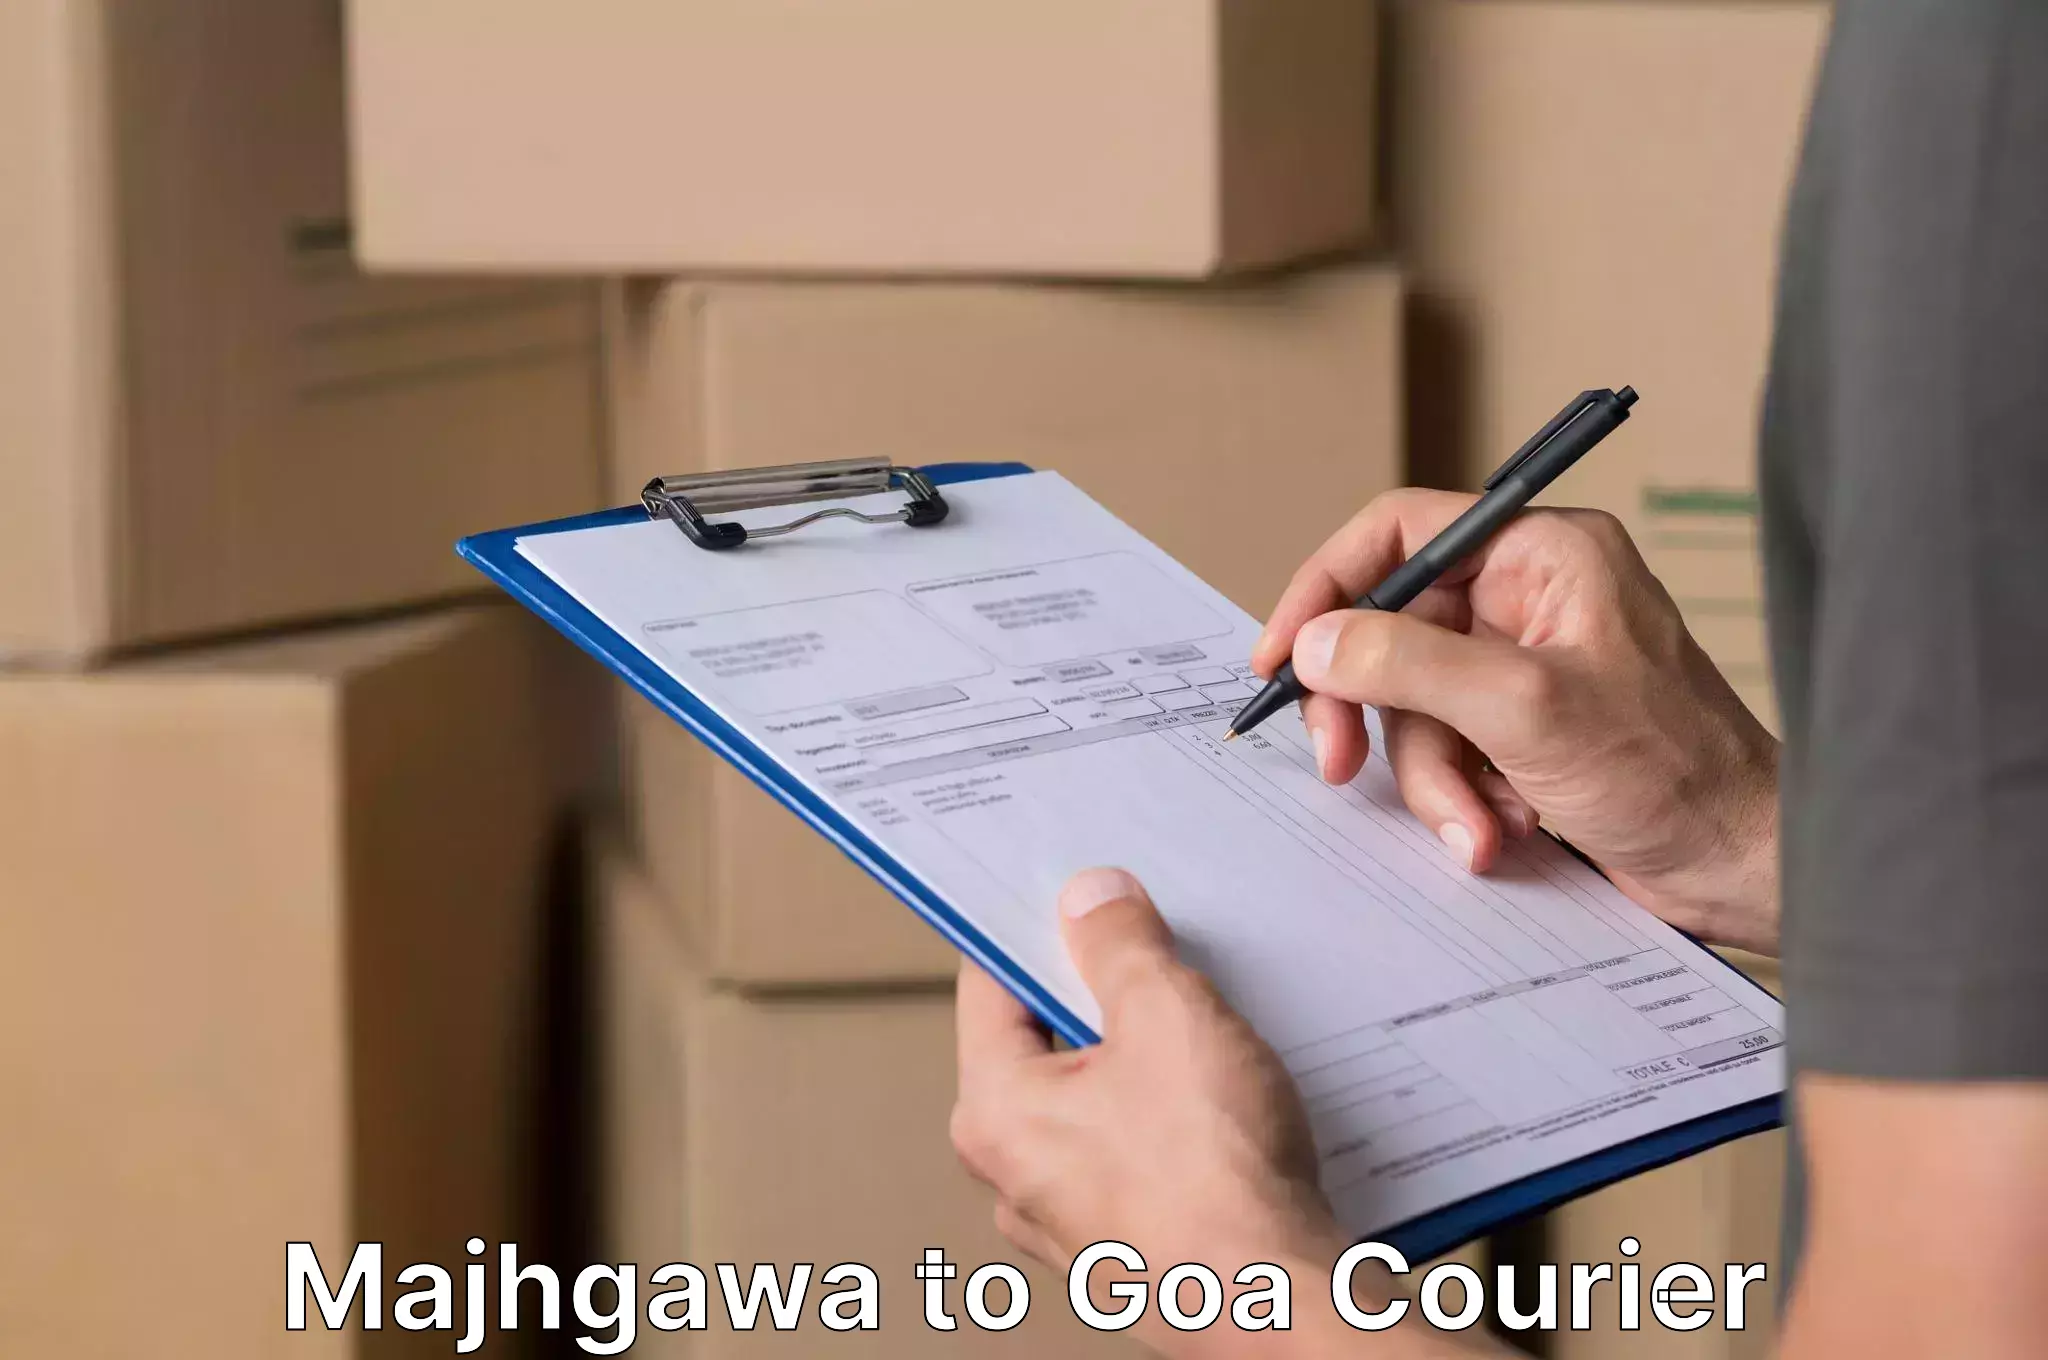 Professional moving assistance Majhgawa to Goa